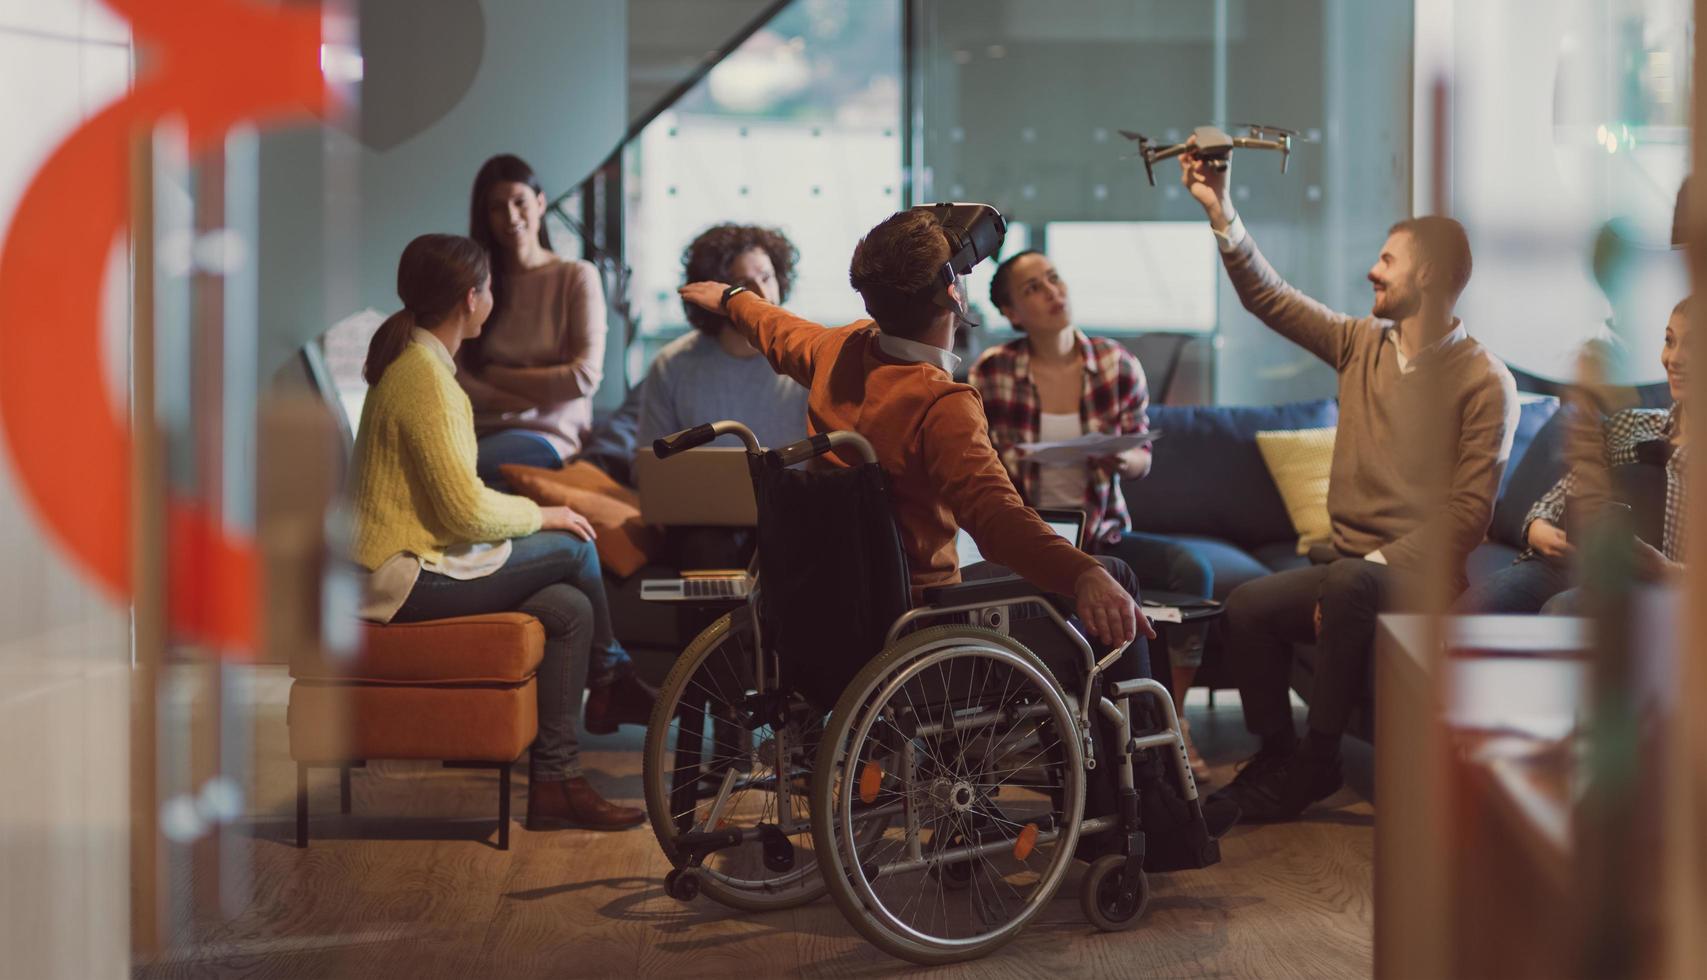 homme d'affaires handicapé en fauteuil roulant au travail dans un bureau de coworking moderne à espace ouvert avec une équipe utilisant la simulation d'assistance de drone de googles de réalité virtuelle photo